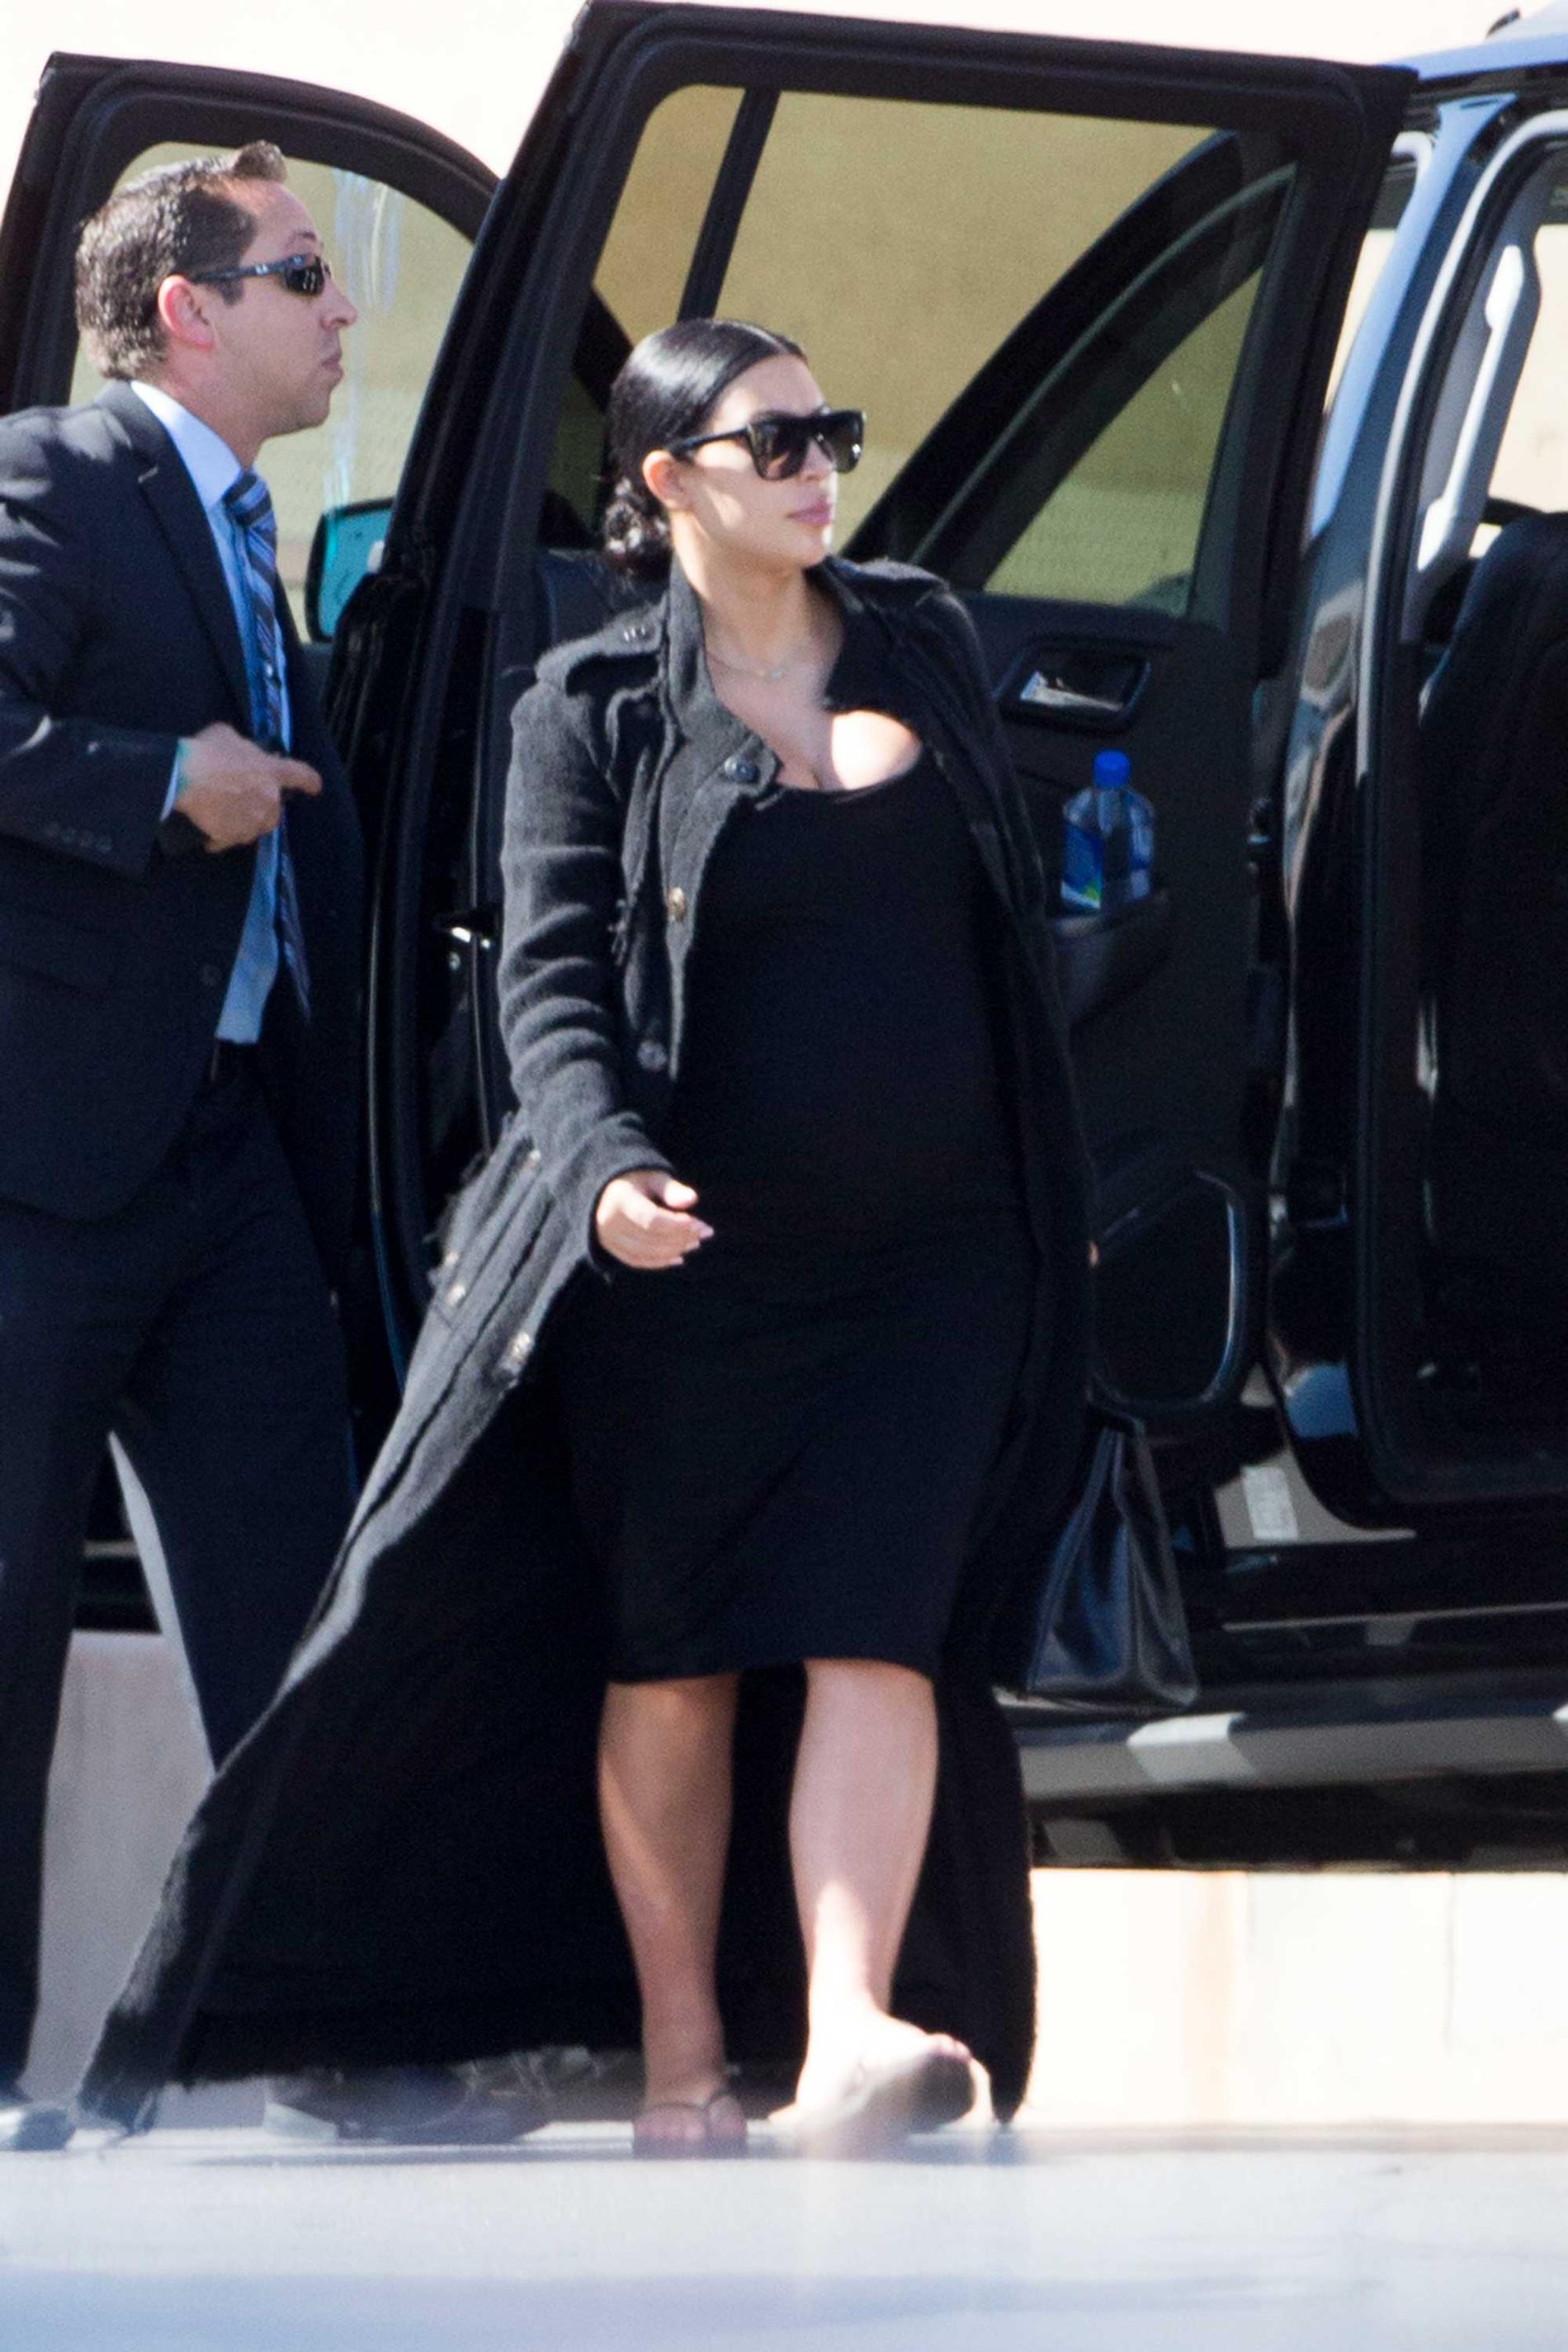 Kim Kardashian and Kris Jenner anländer till sjukhuset i Las Vegas, där också Khloé Kardashian vakar.